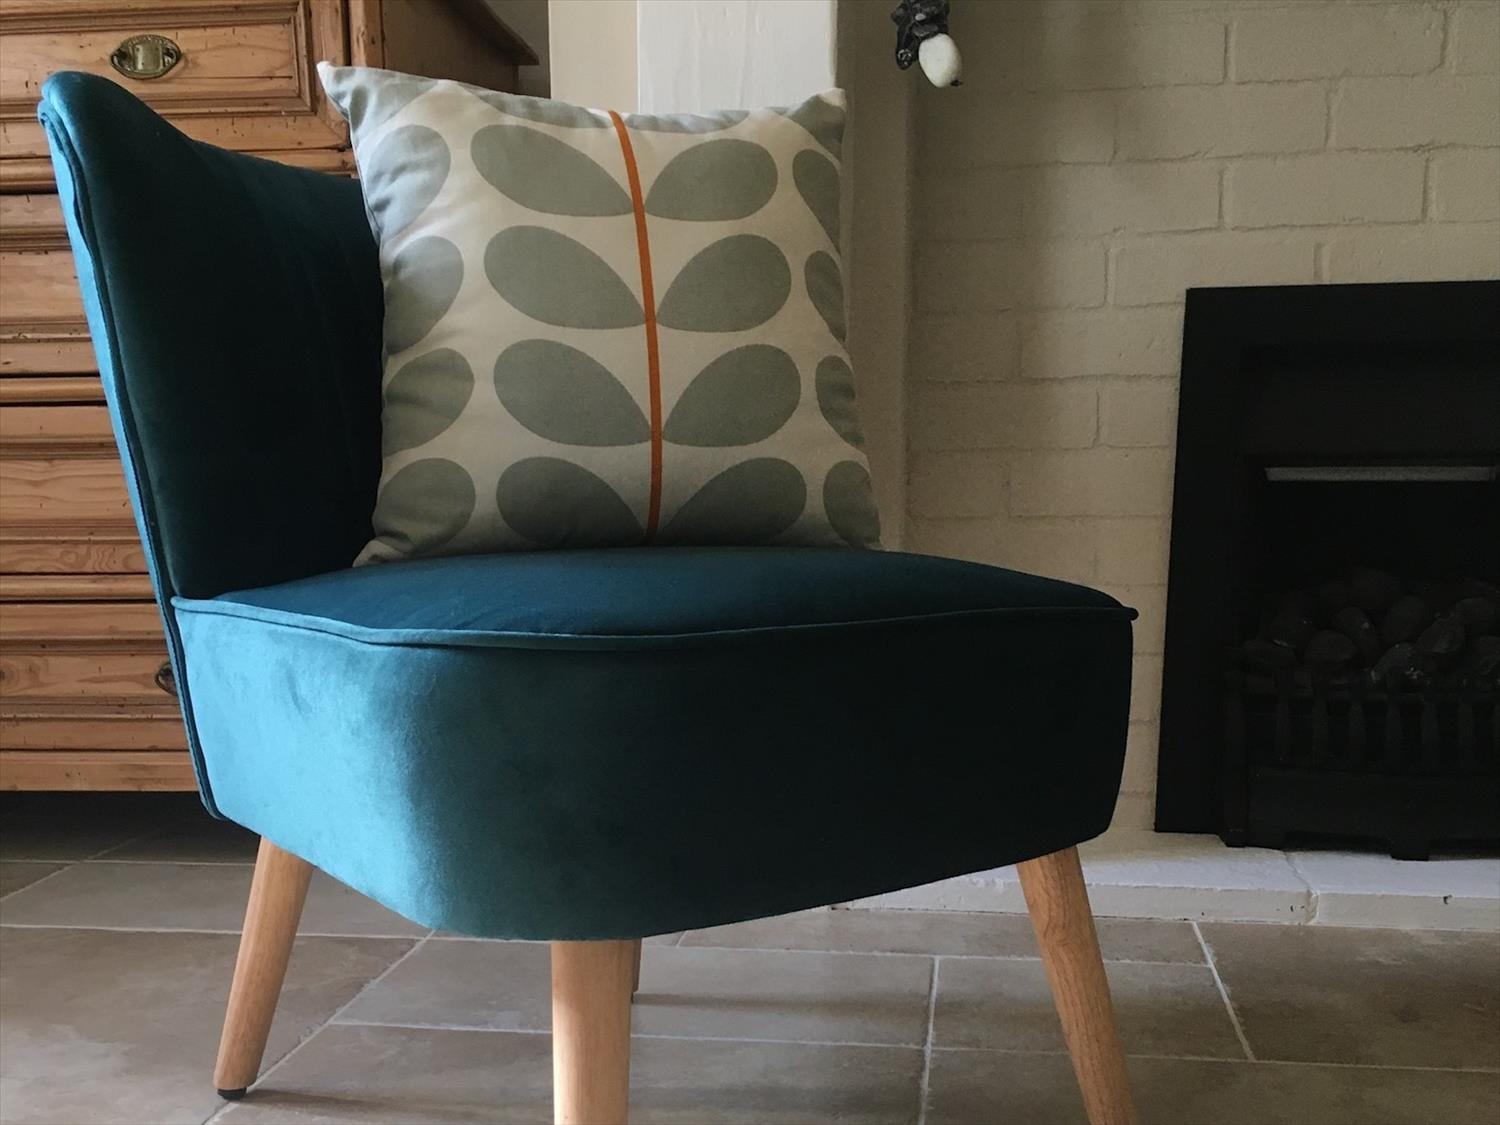 Teal velvet easy chair and Orla Kierly cushion in living room 9 Melinda Cottage East Runton @NorfolkCoastline